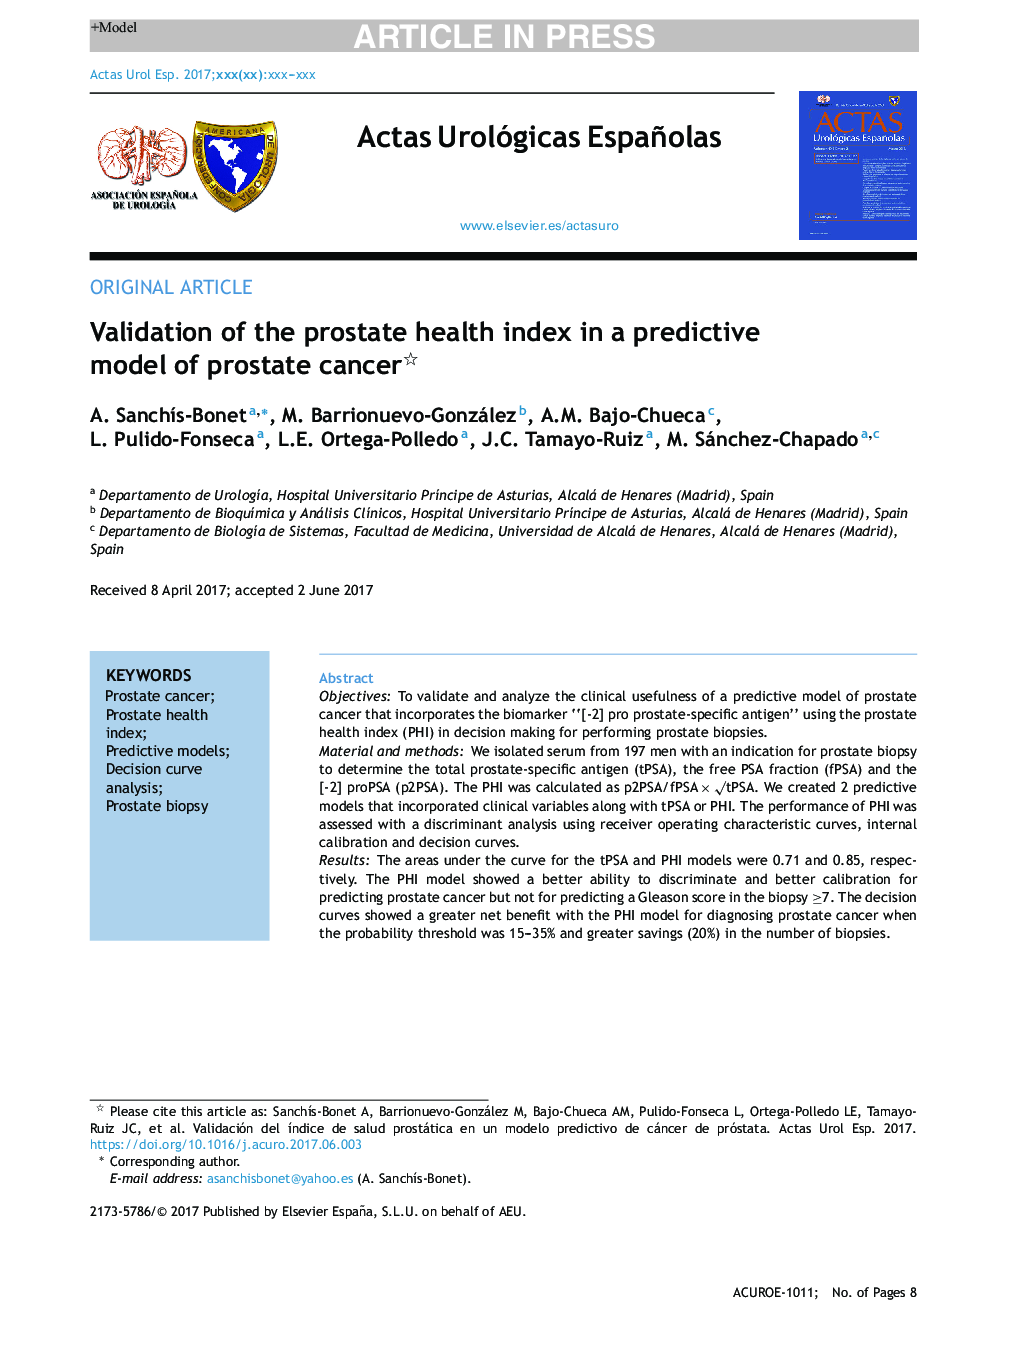 اعتبار شاخص سلامت پروستات در یک مدل پیش بینی کننده سرطان پروستات 